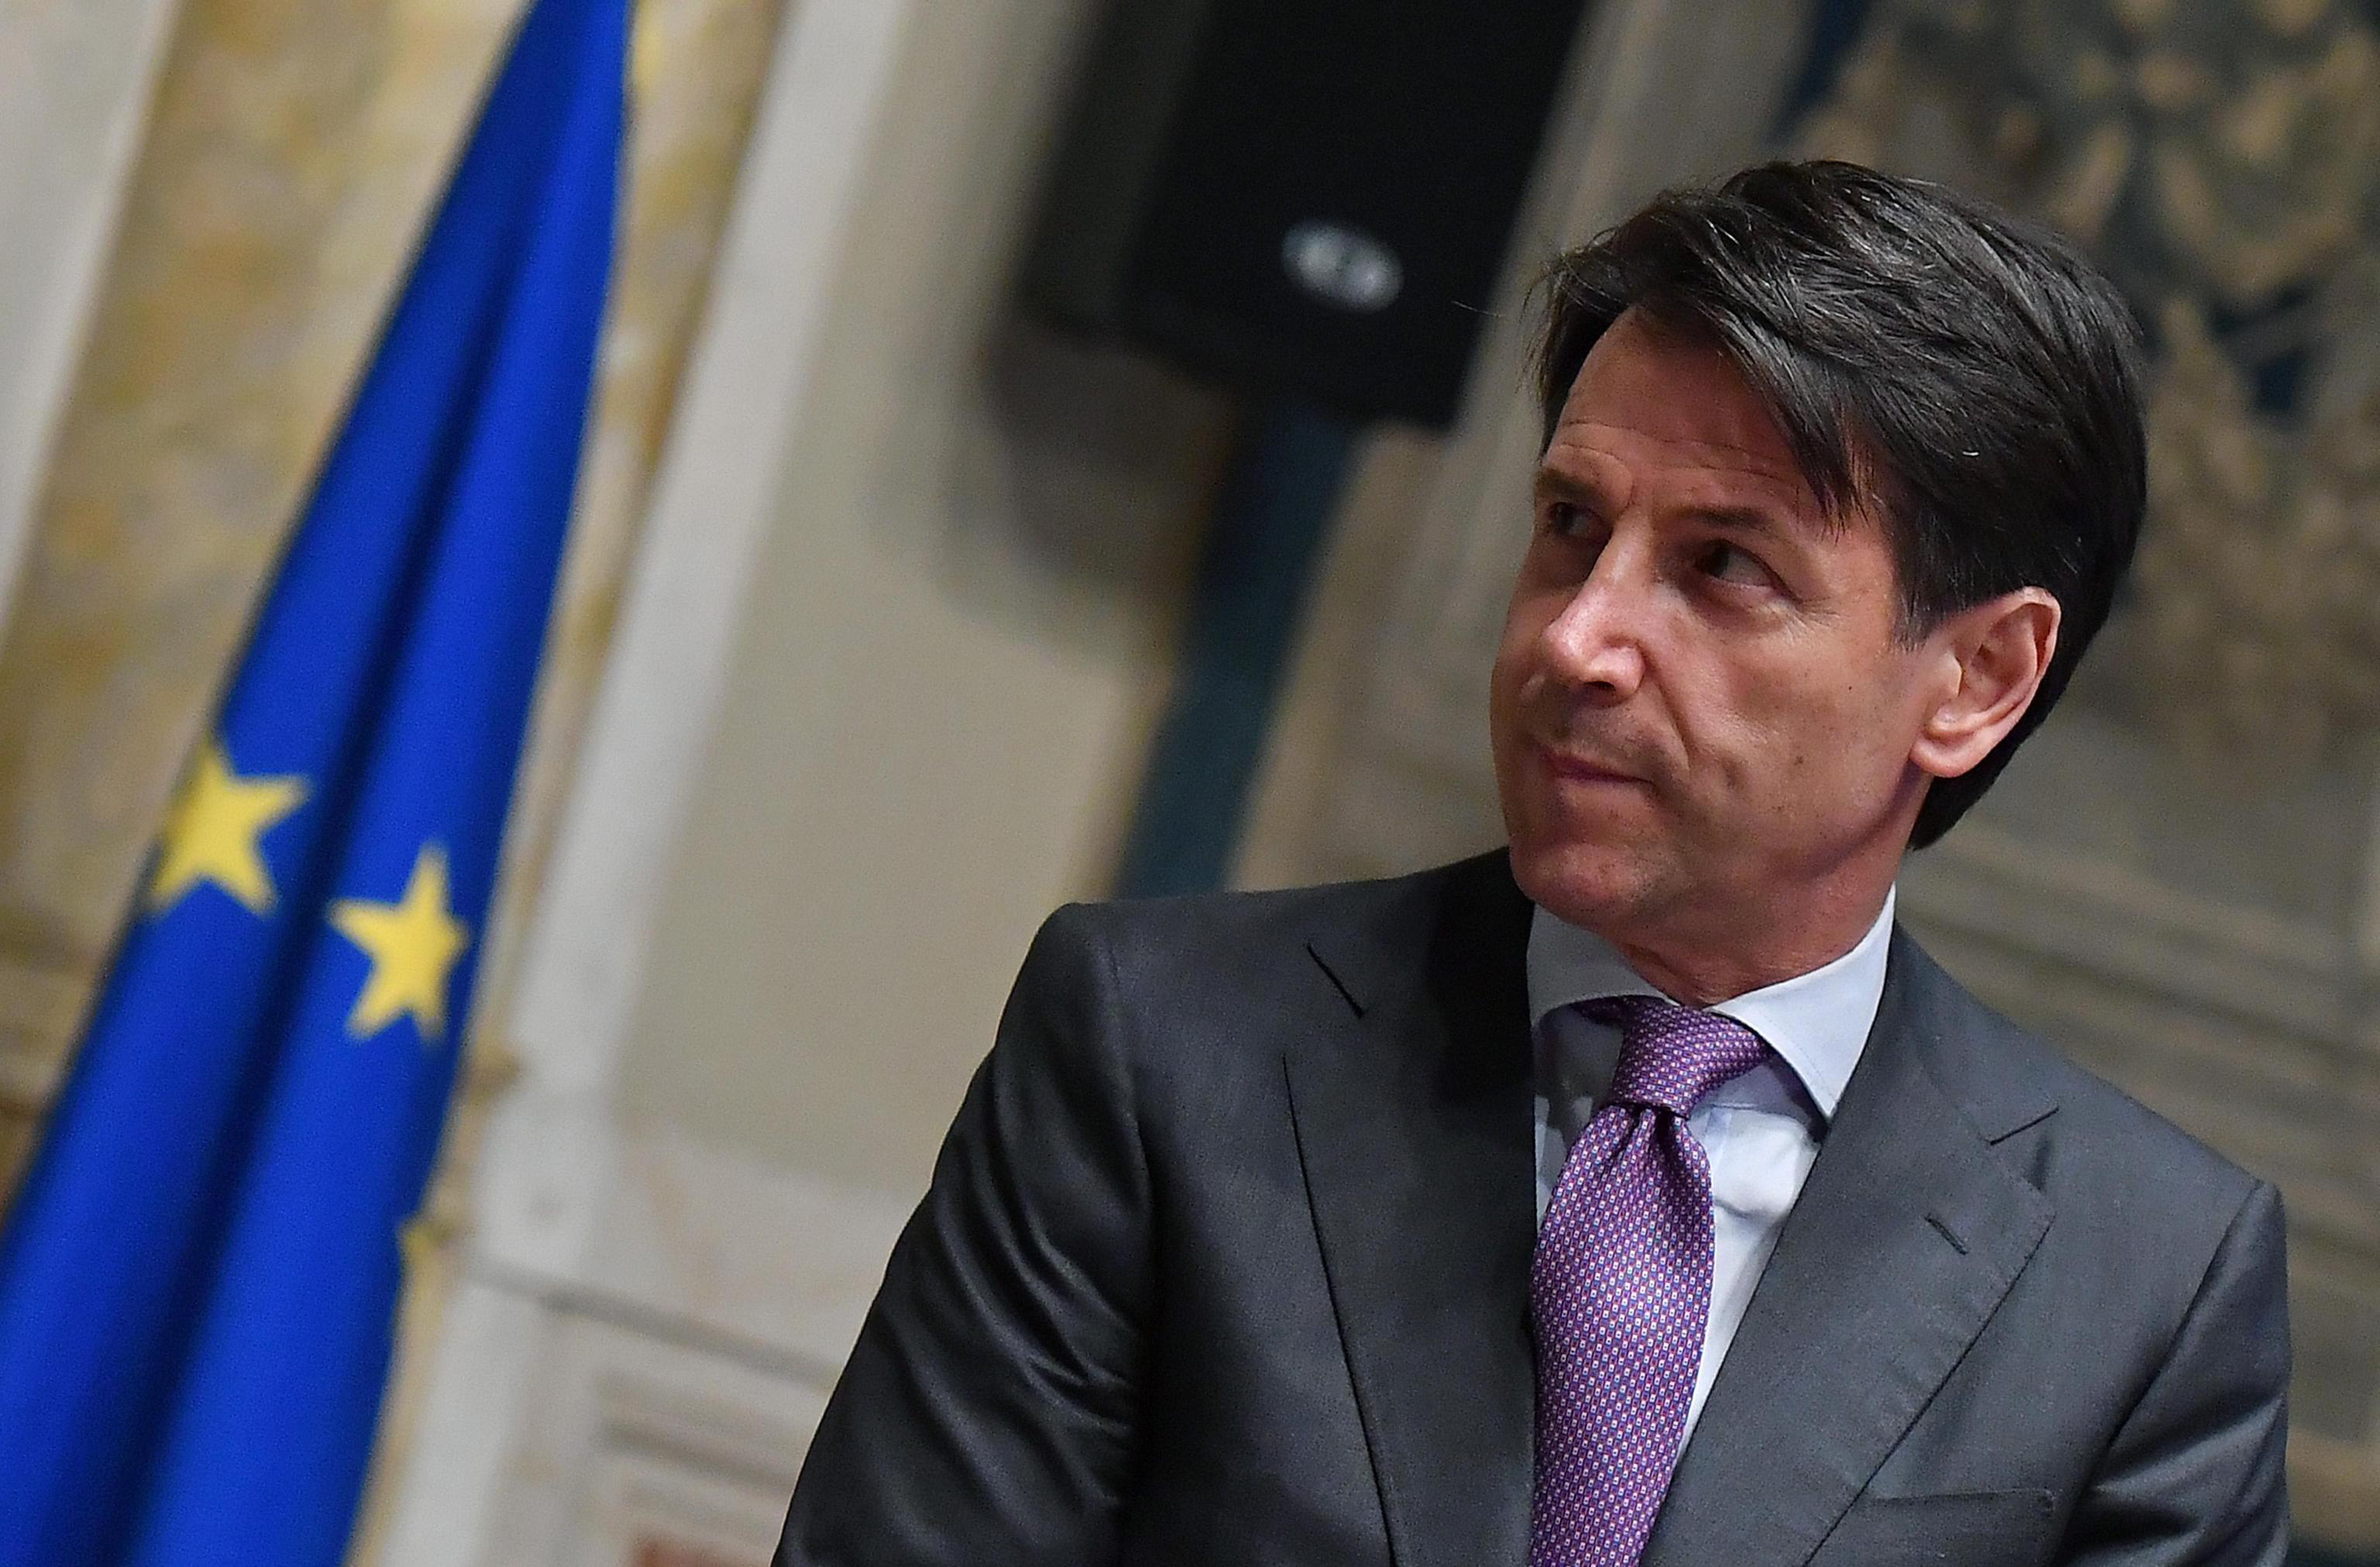 Ιταλία: H ευρωπαϊκή στρατηγική της κυβέρνησης Κόντε